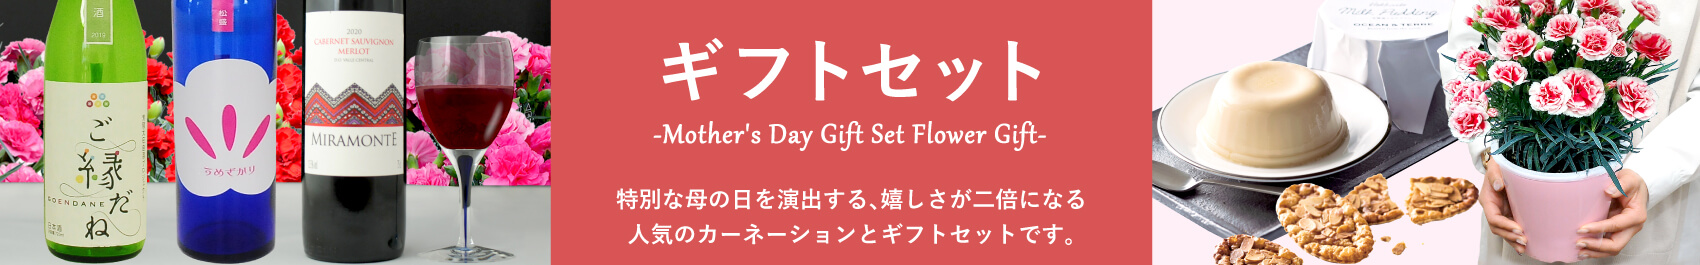 母の日に贈る人気の花ギフトセット